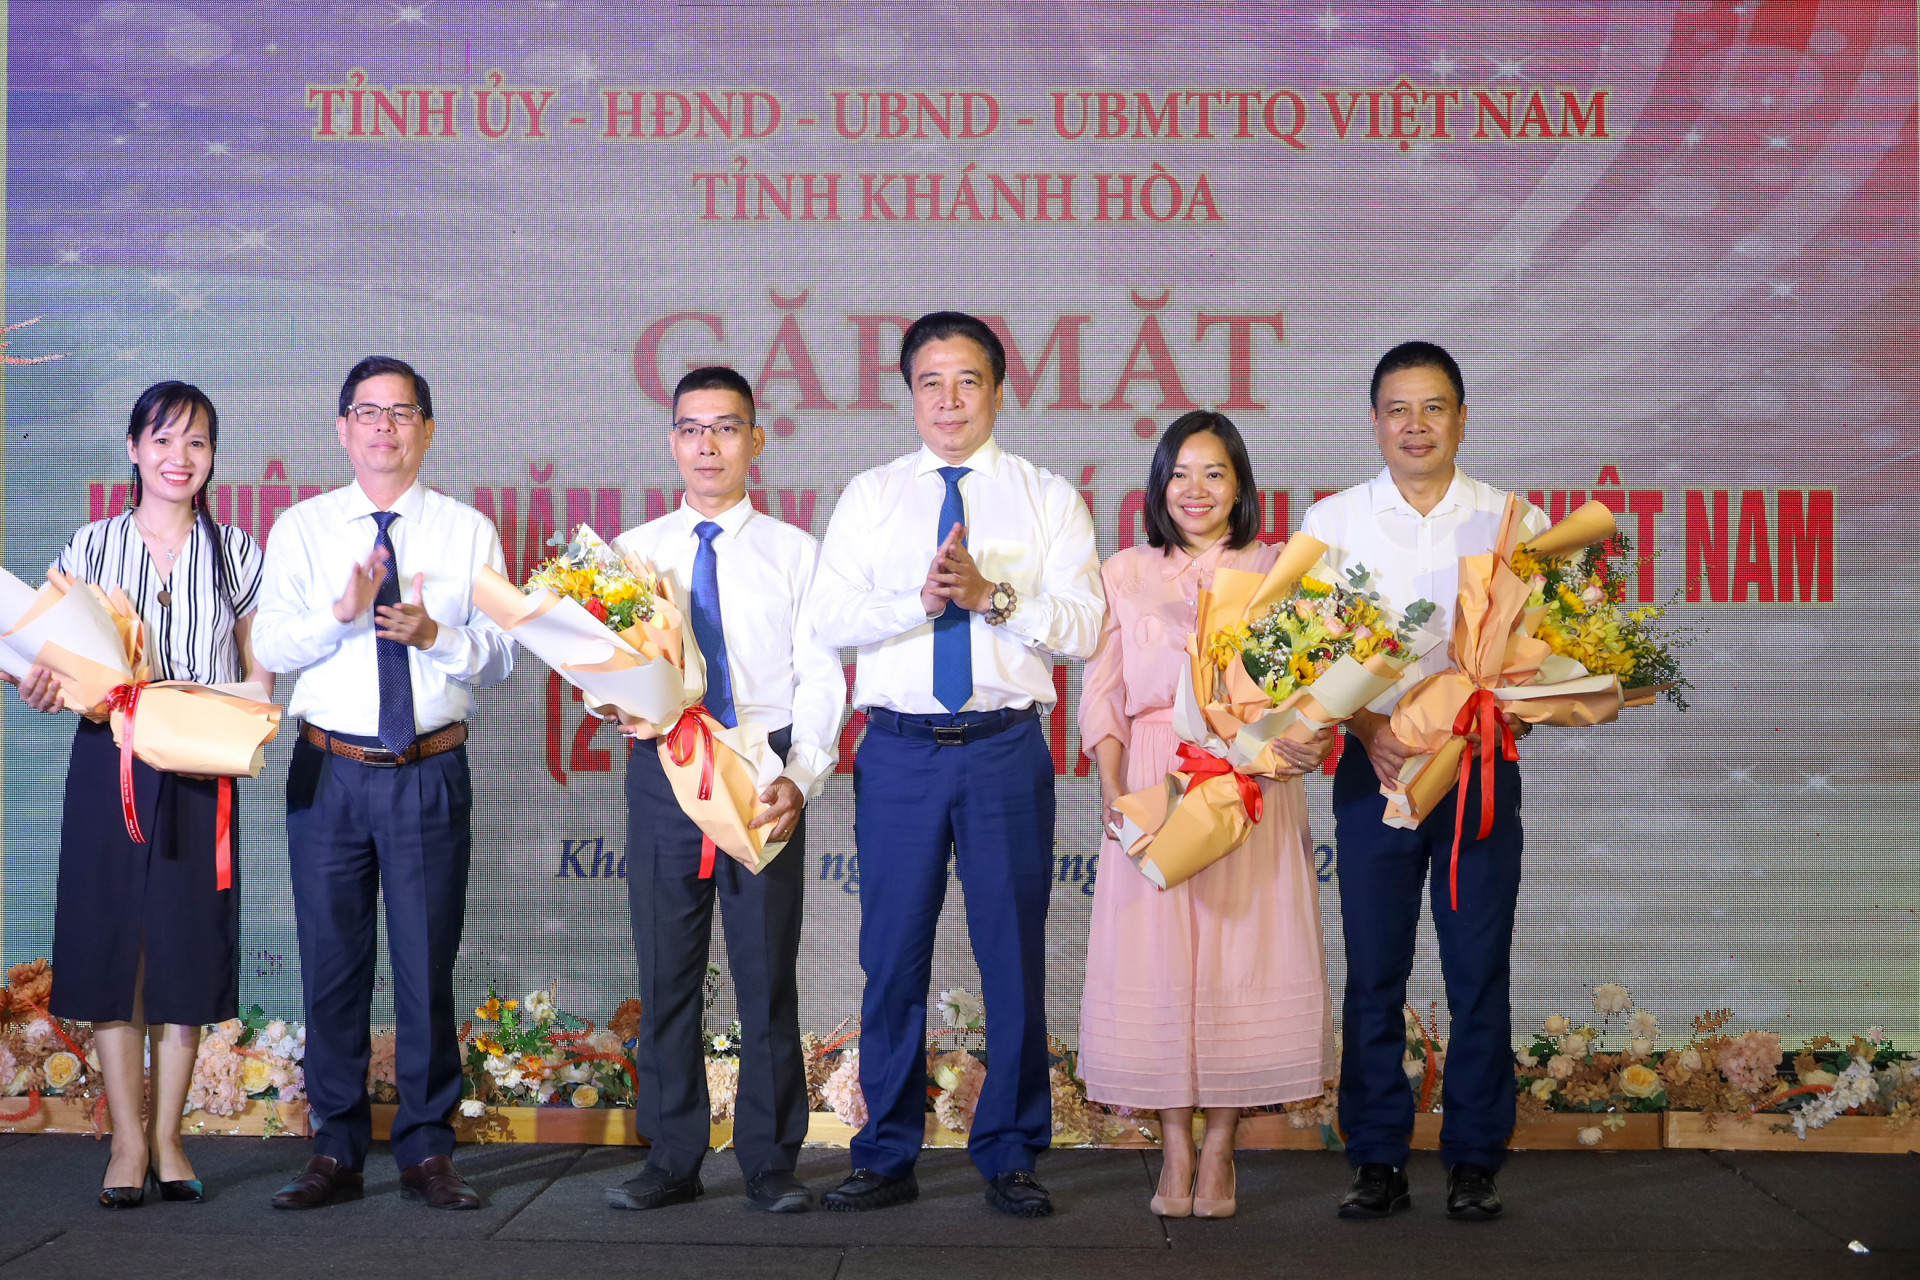 Đồng chí Nguyễn Khắc Toàn và đồng chí Nguyễn Tấn Tuân tặng hoa chúc mừng đại diện các cơ quan báo chí.